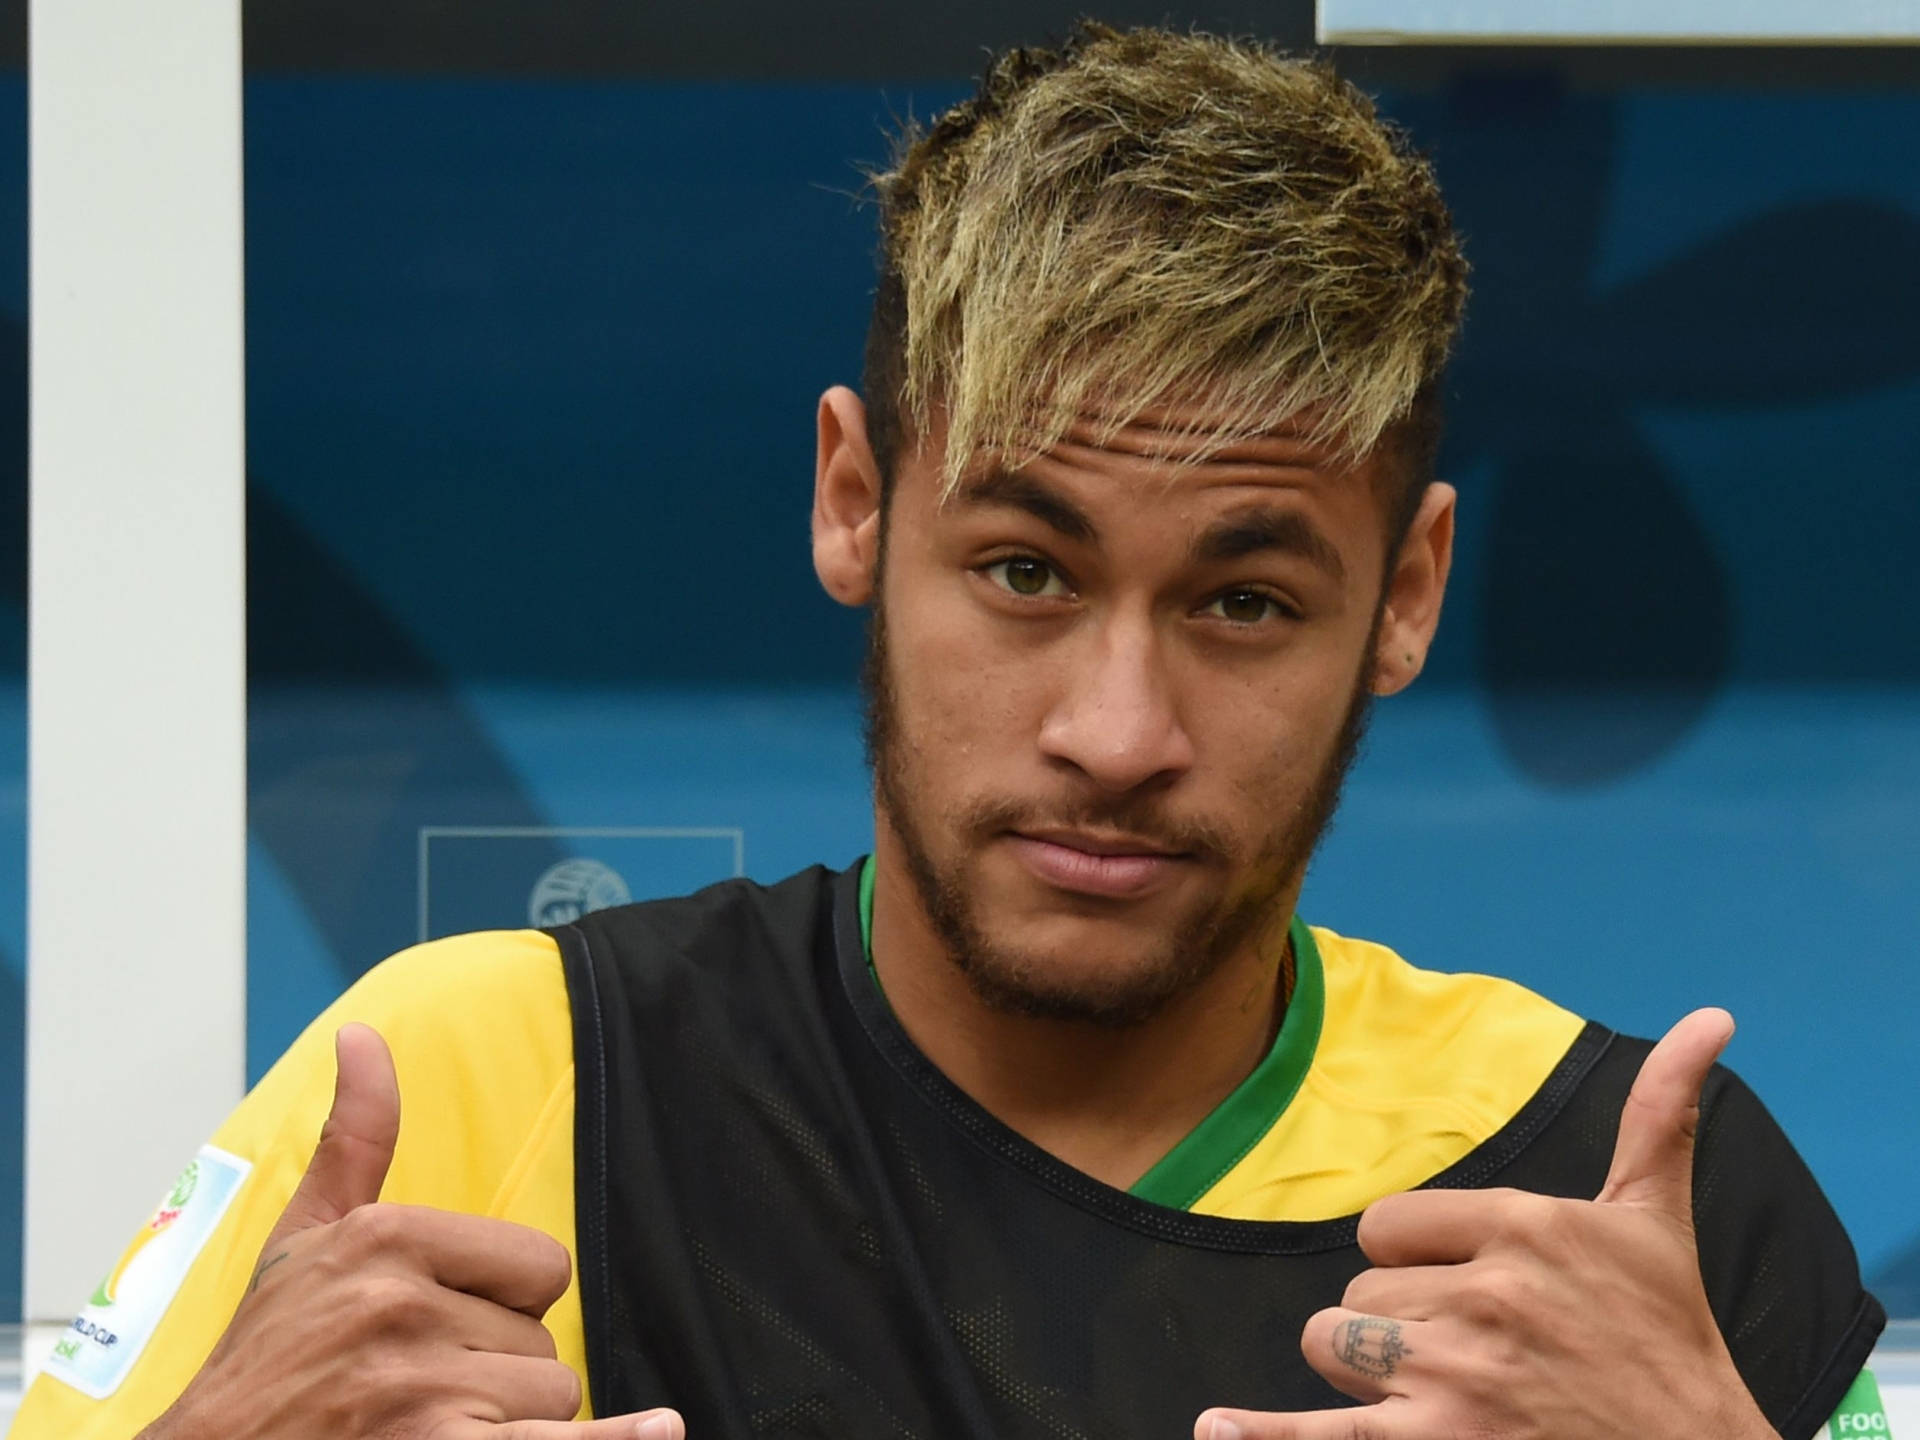 Free Neymar Jr Wallpaper Downloads, [200+] Neymar Jr Wallpapers for FREE |  